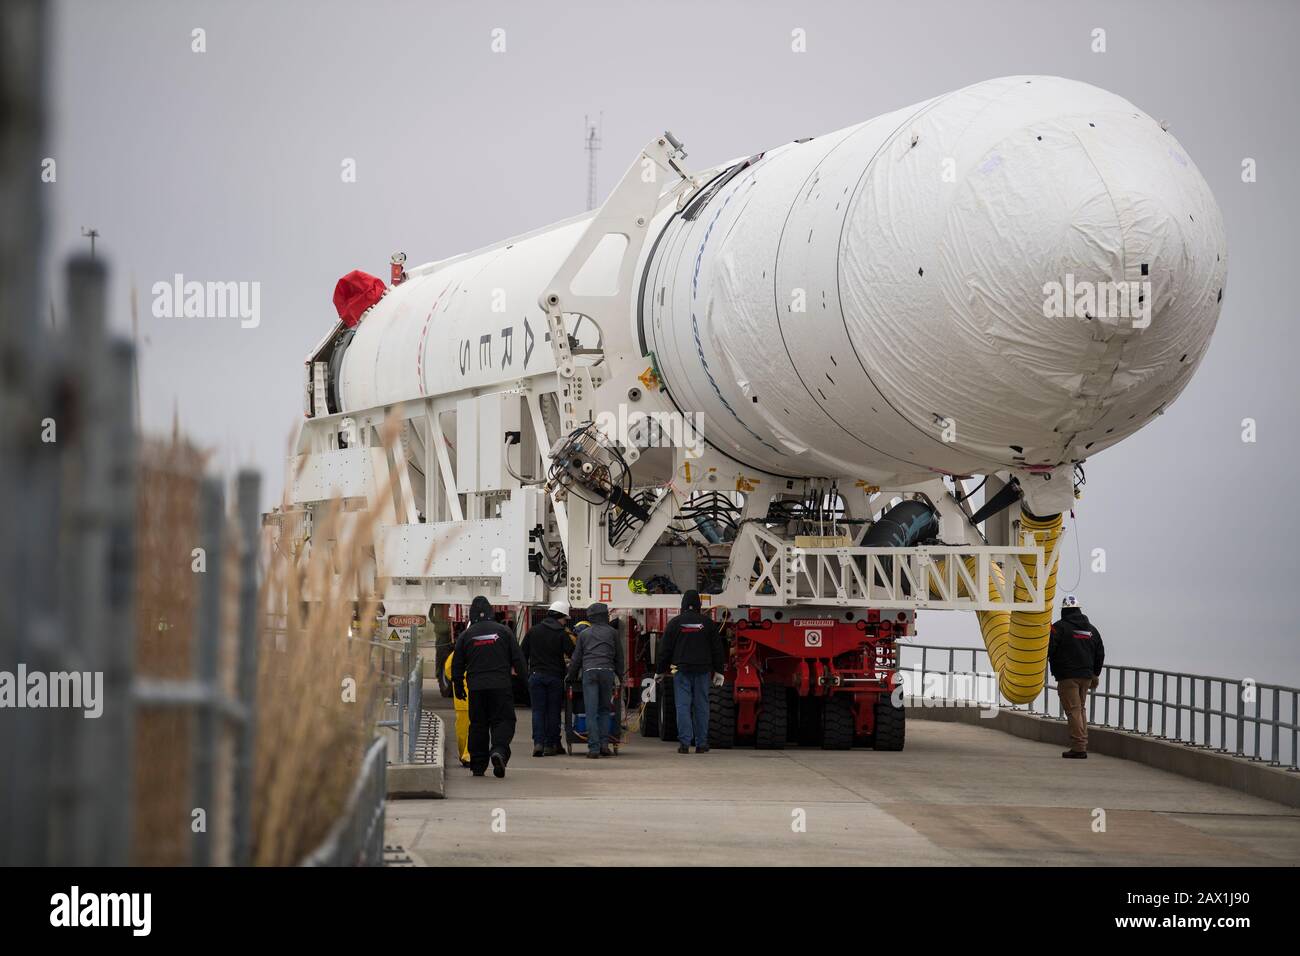 El cohete Northrop Grumman Antares, con la nave espacial Cygnus reupply a bordo, se traslada al lanzamiento de Pad-0A, en la instalación de vuelo Wallops de la NASA, el 5 de febrero de 2020, en Wallops, Virginia. La misión comercial de reabastecimiento de carga transportará 7,500 libras de suministros y equipo a la Estación Espacial Internacional y está programada para su lanzamiento el 9 de febrero. Foto de stock